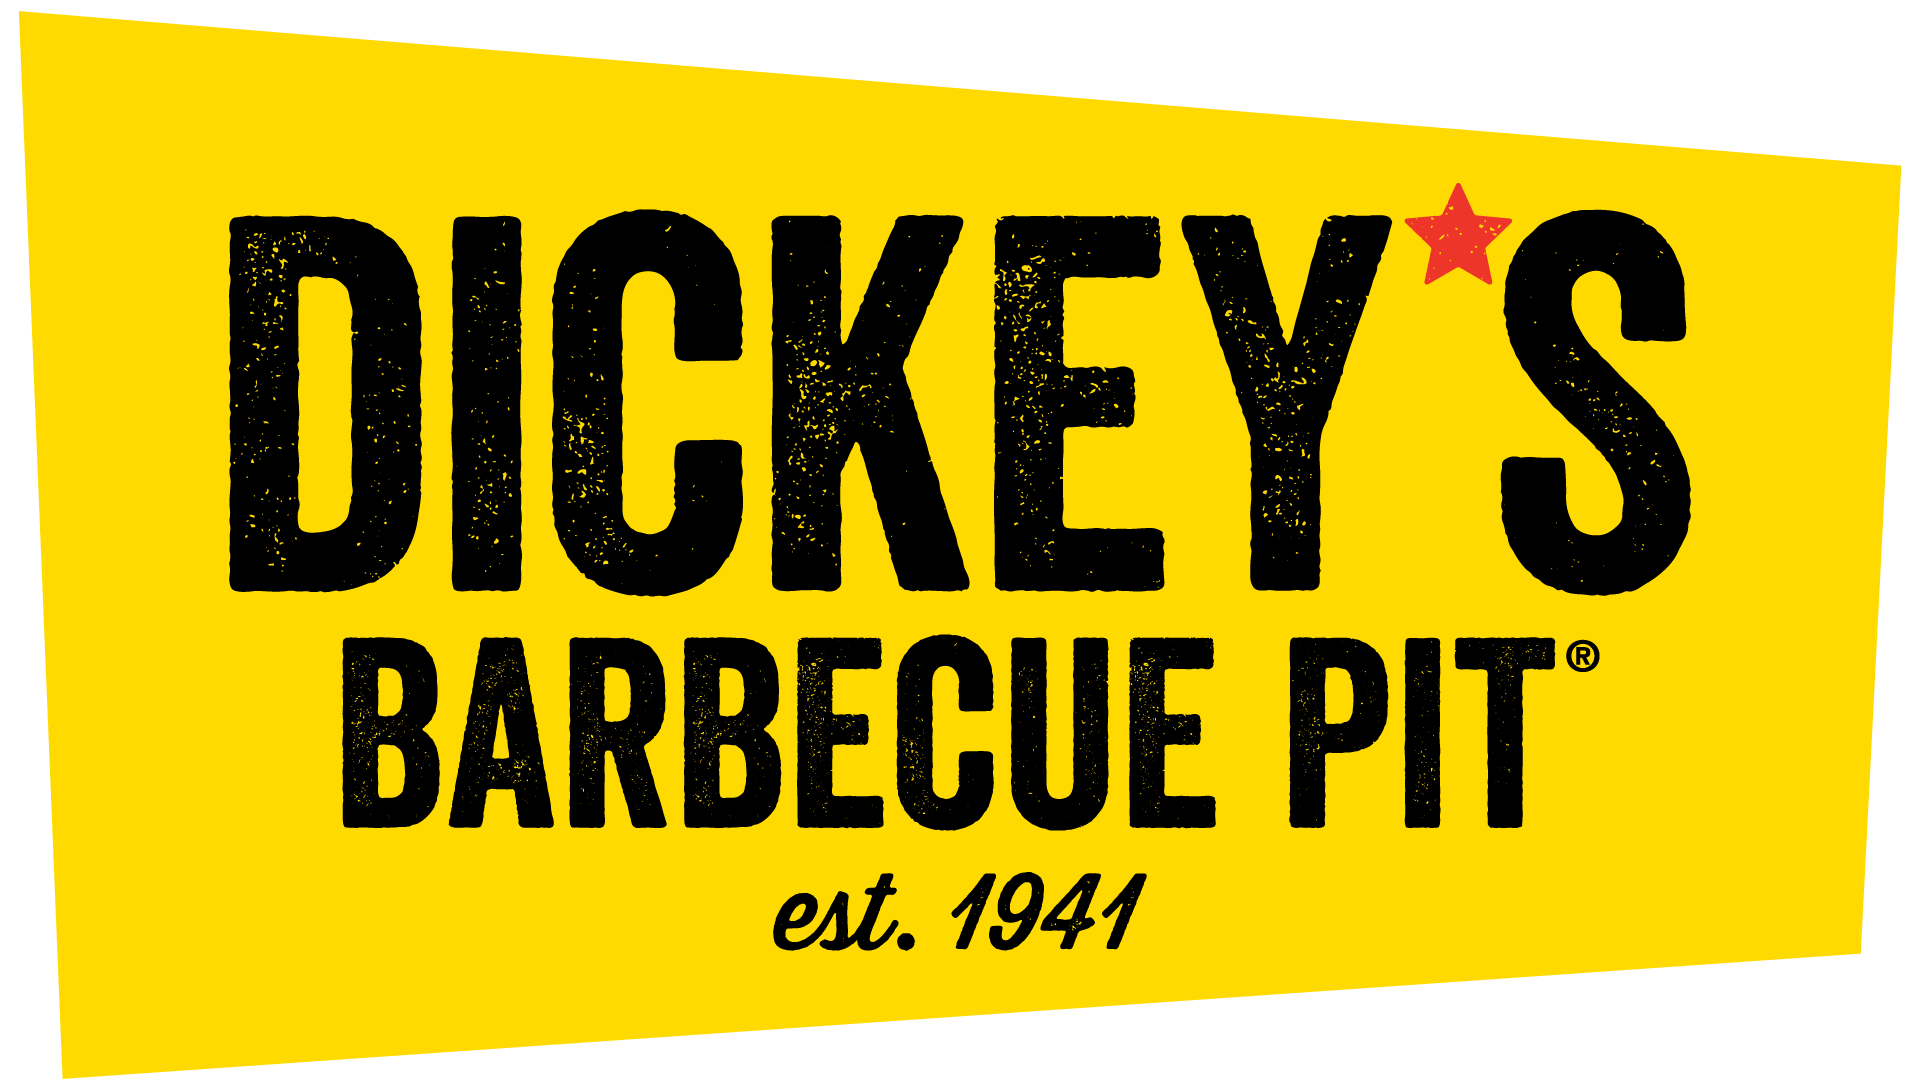 Dickey’s Barbecue Ca